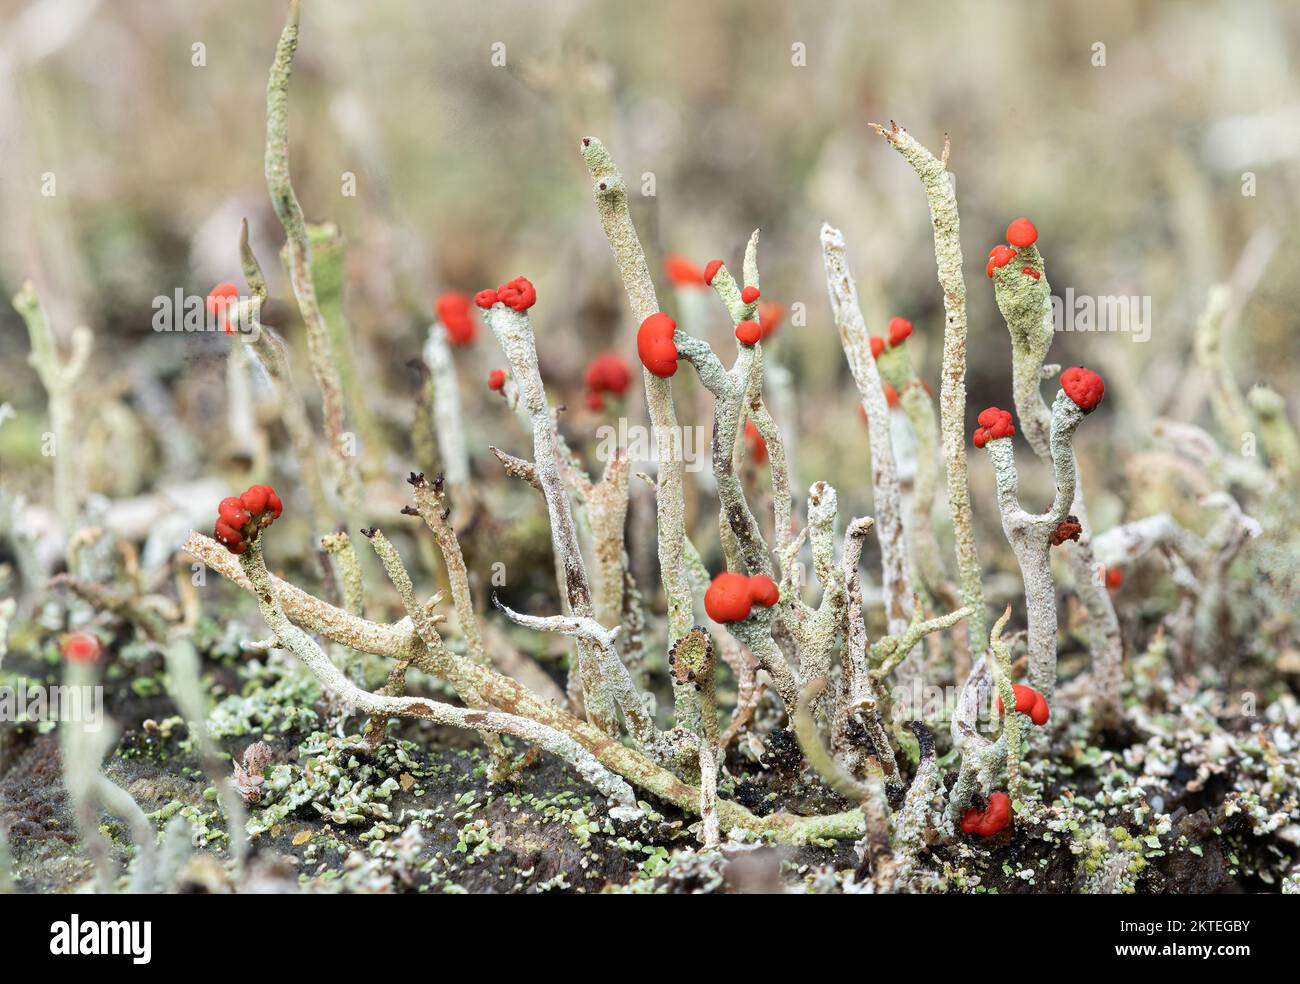 Cladonia floerkeana lichen, también llamada Devils matchsticks, con puntas rojas brillantes, creciendo en un tocón de árbol podrido, Inglaterra, Reino Unido Foto de stock